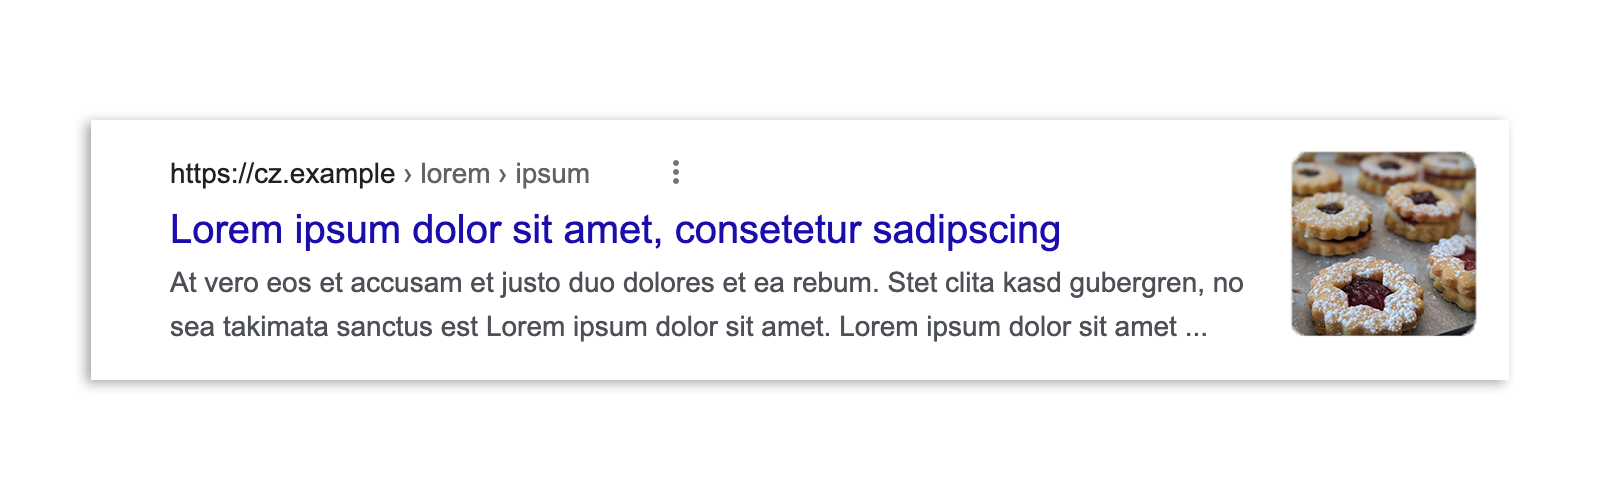 Makalenin snippet'i, görsel önizlemesi, başlığı ve URL'sinin gösterildiği, yasa yürürlüğe girmeden önce Çekya'daki bir Google Arama sonucu.